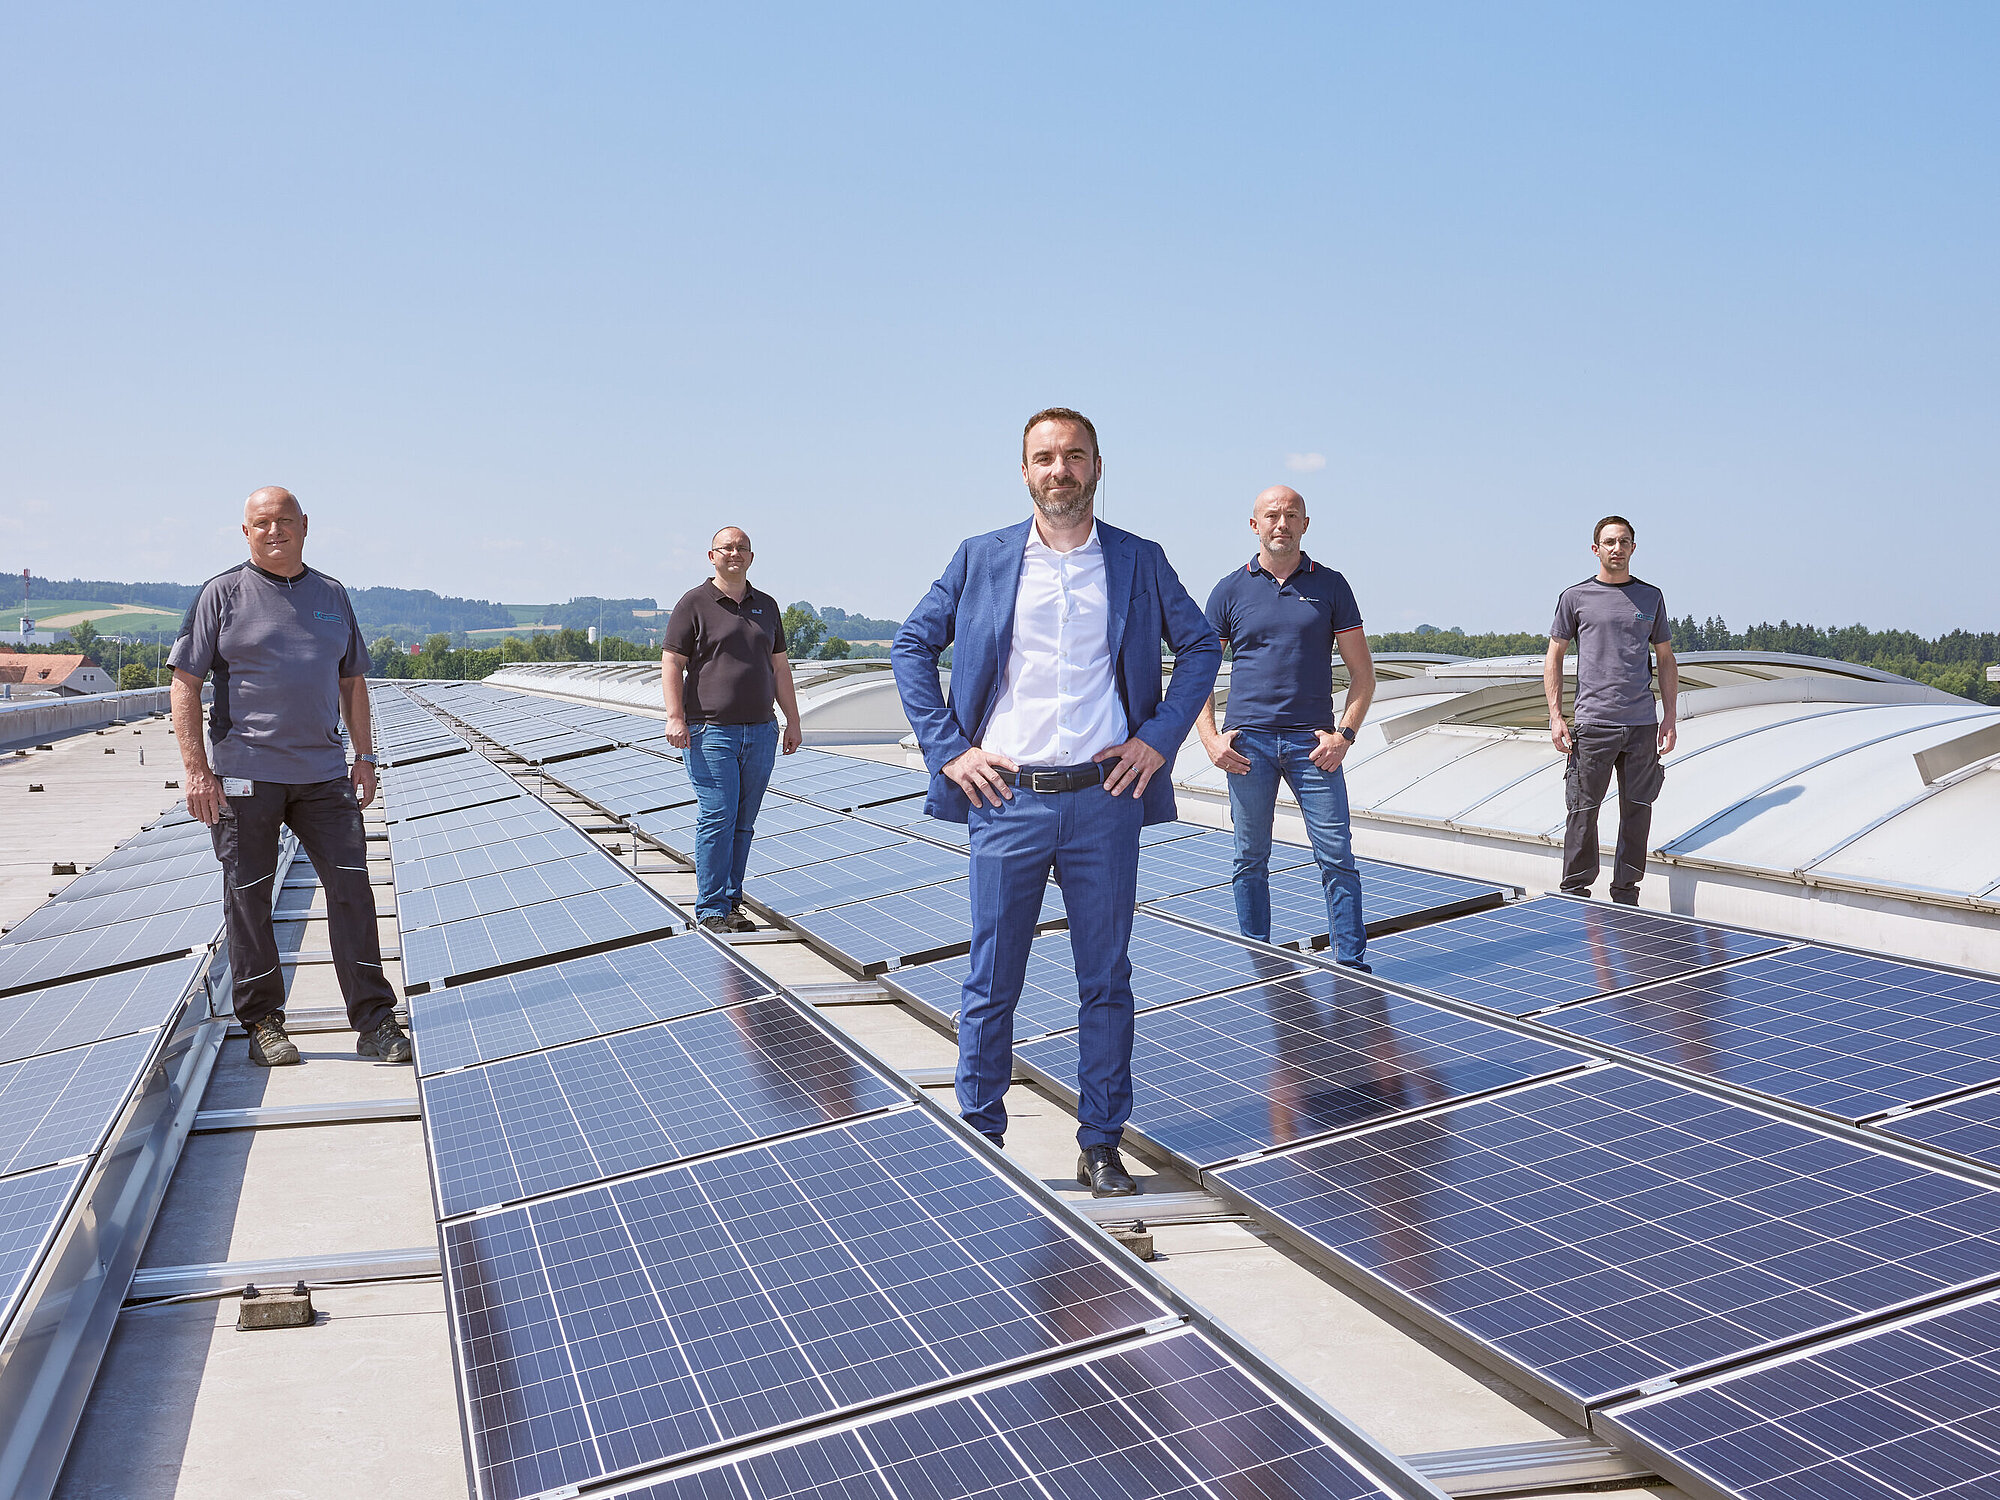 Photovoltaik-Anlage auf einem Dach mit Personen